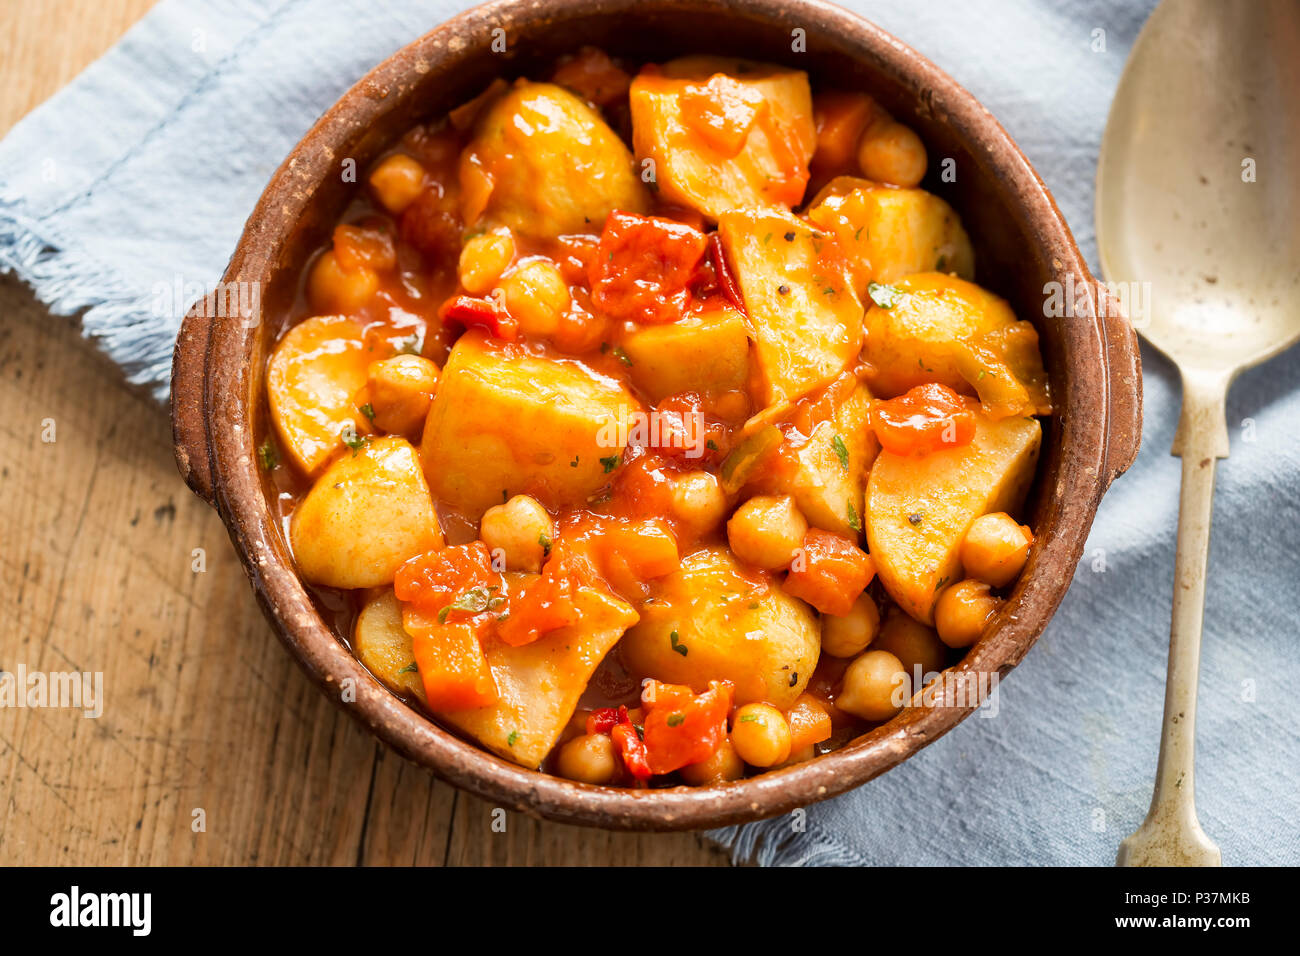 Patatas bravas. Pommes de terre rôties avec des pois chiches dans la sauce tomate. Banque D'Images